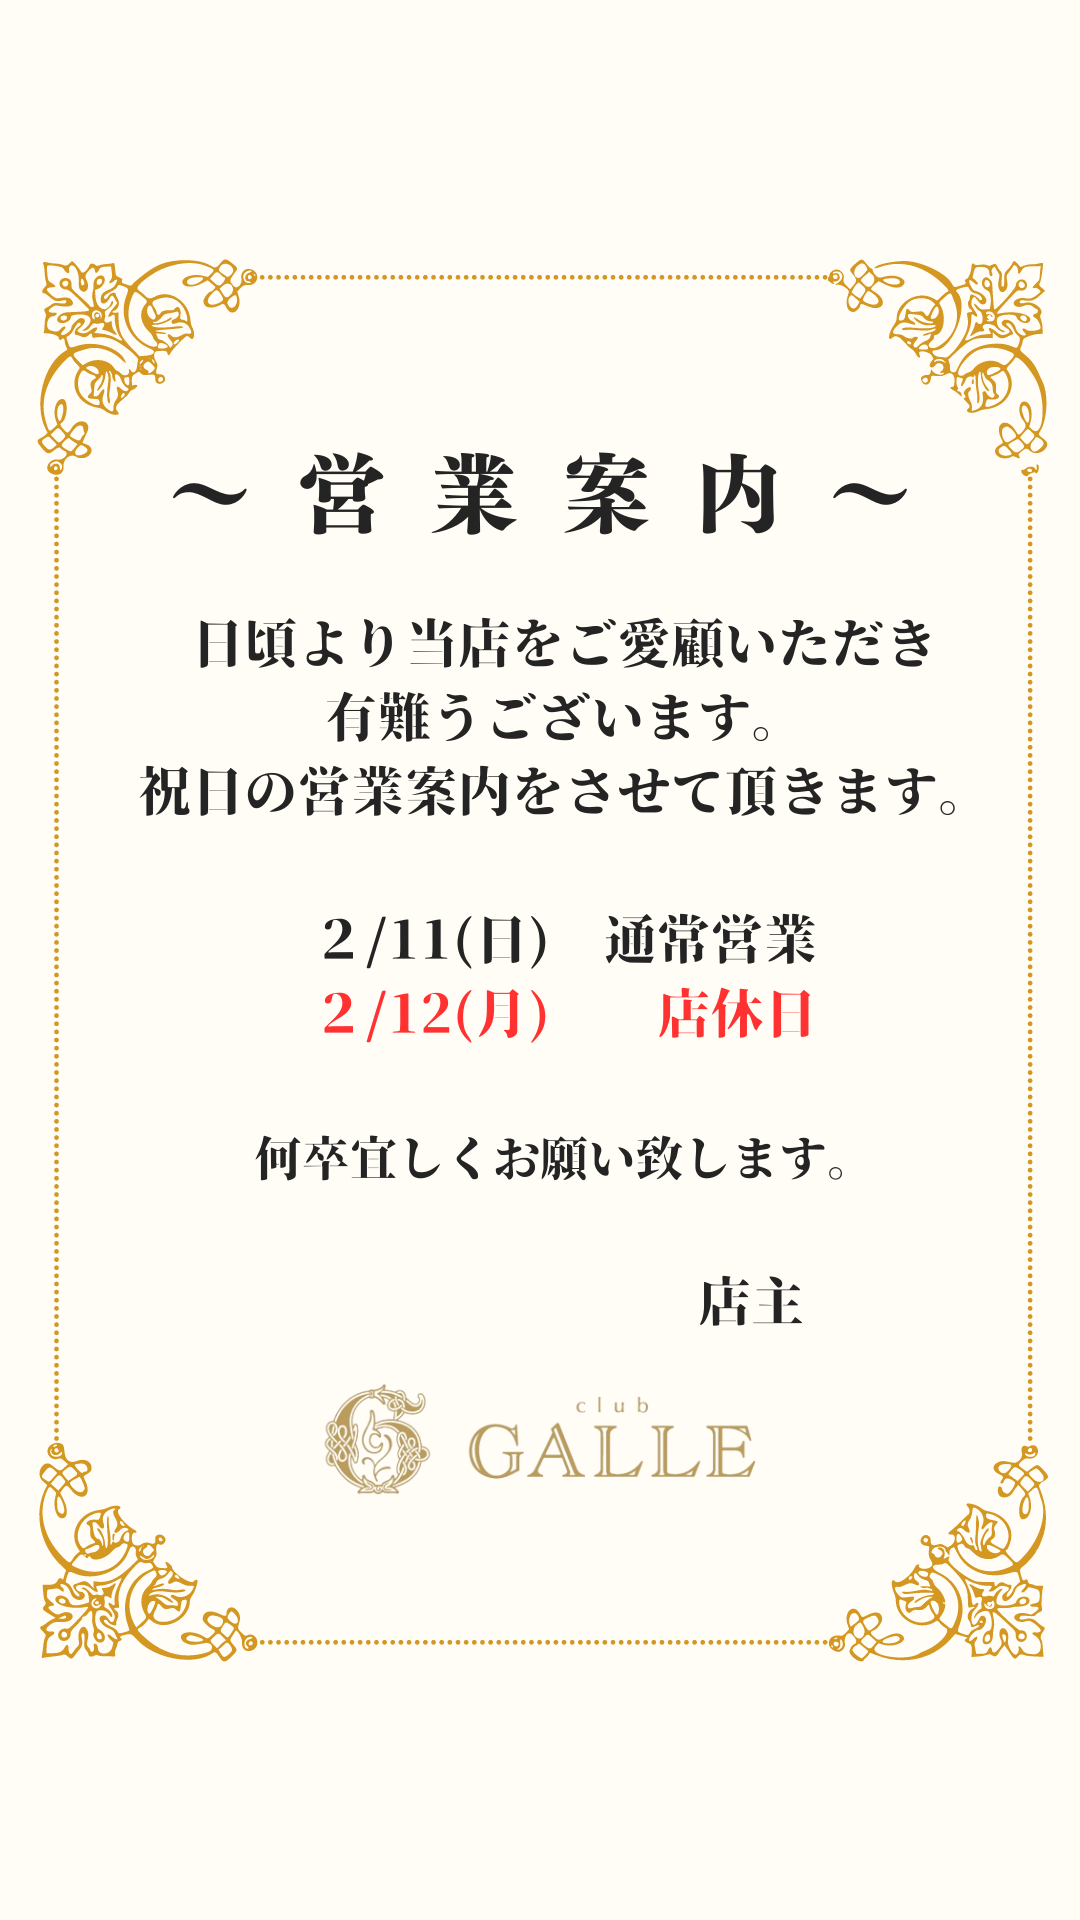 EVENT-営業日のお知らせ（GALLE）